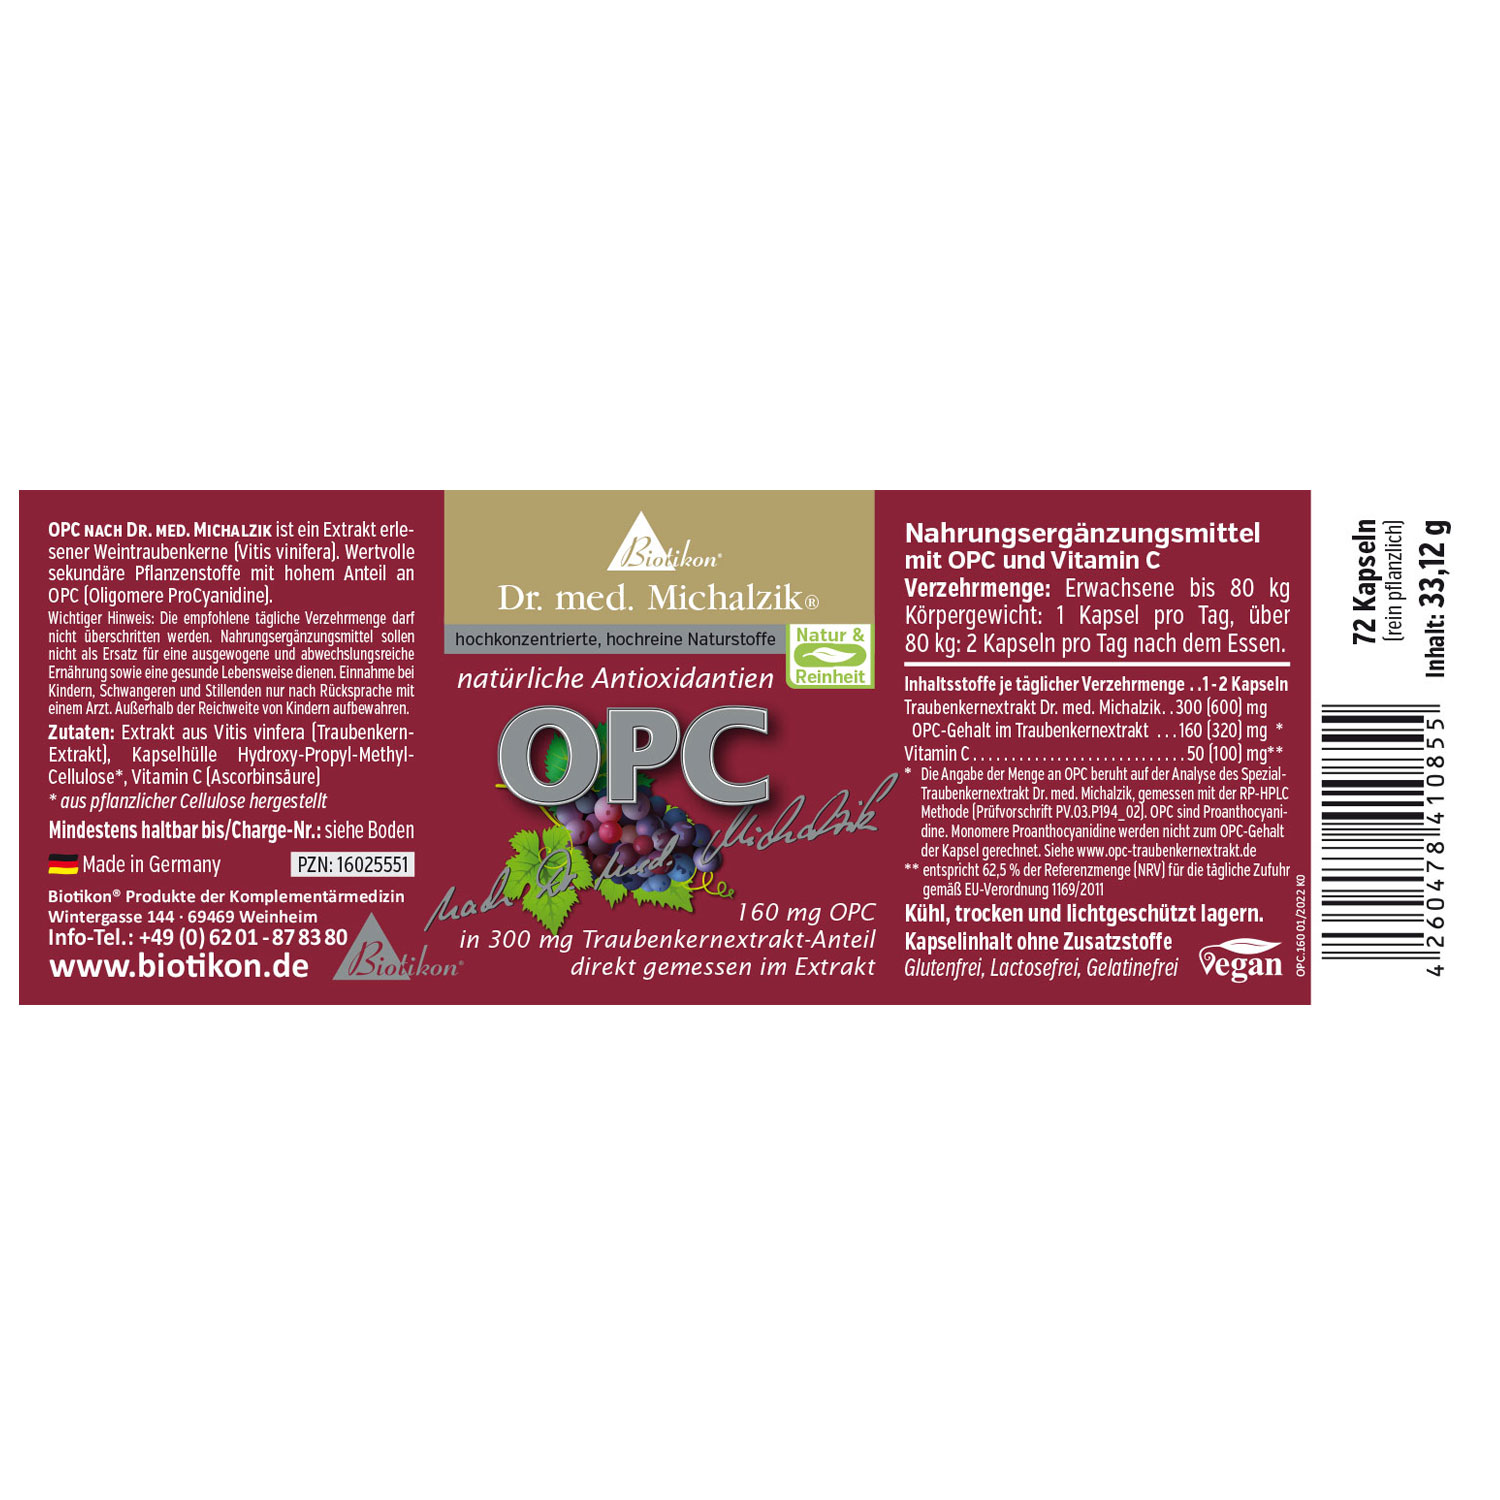 OPC von Biotikon - Etikett